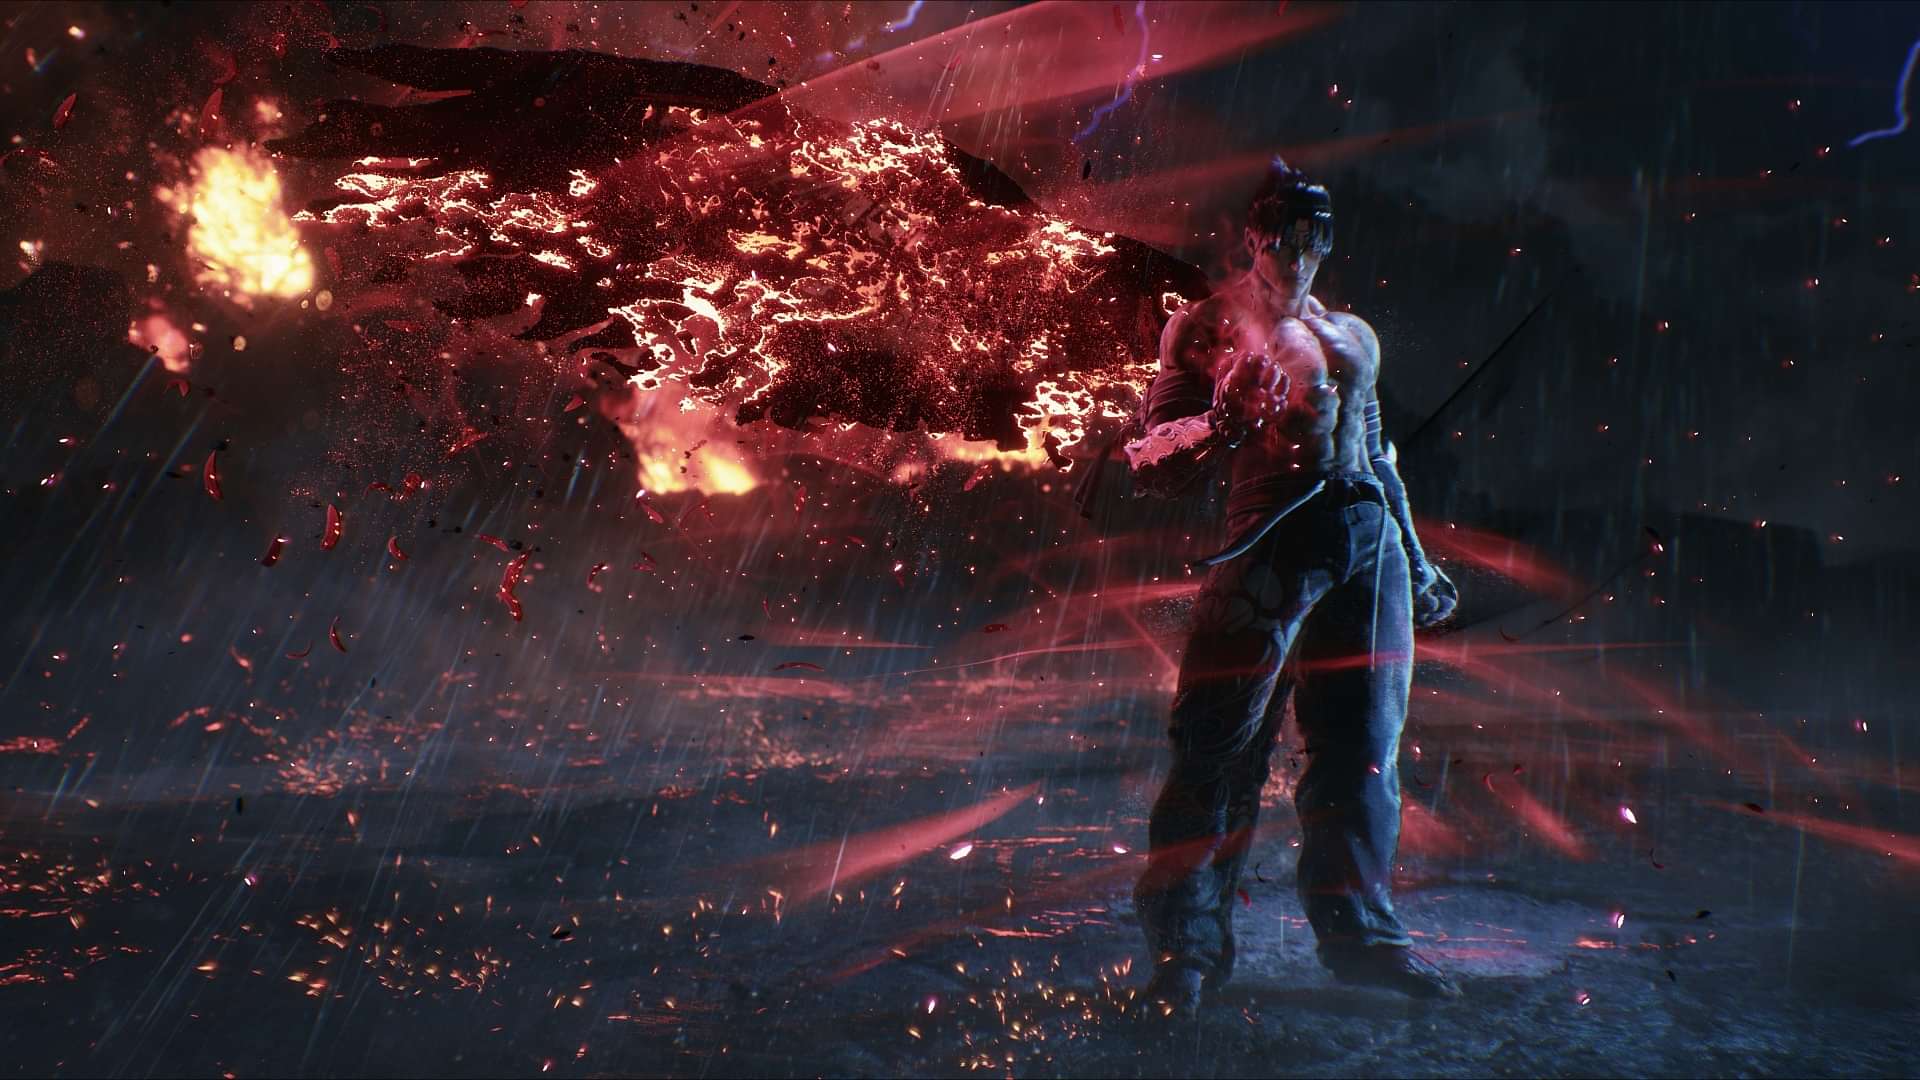 Tekken 8 Fans Should Be Excited for November 12